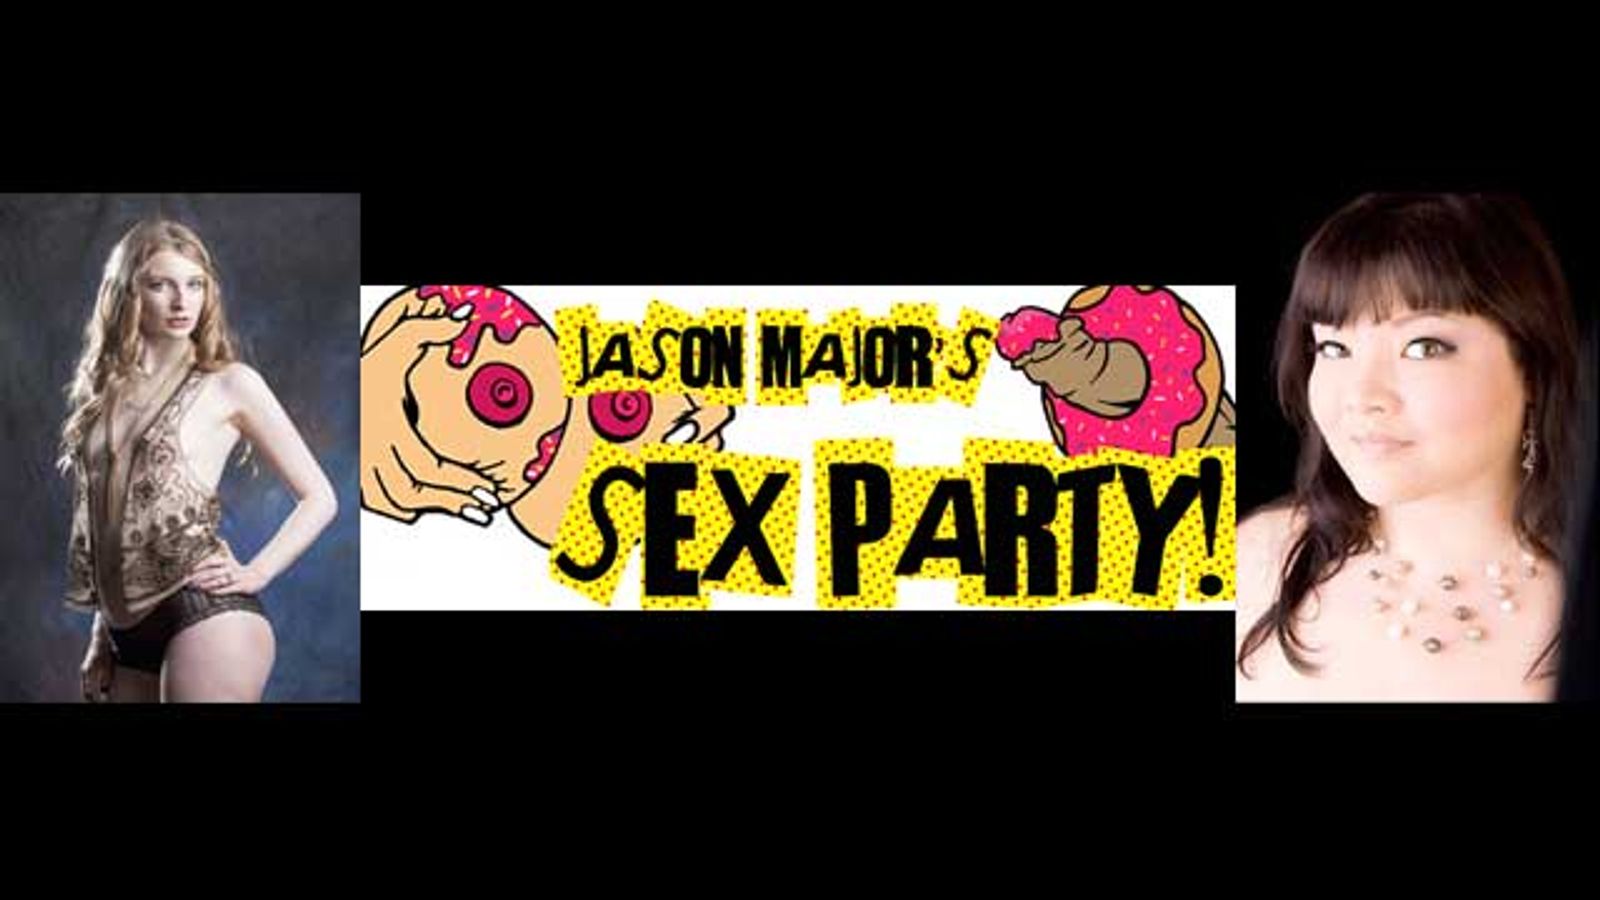 Ela Darling, Kelly Shibari Guest Star at ‘Jason Major’s Sex Party’